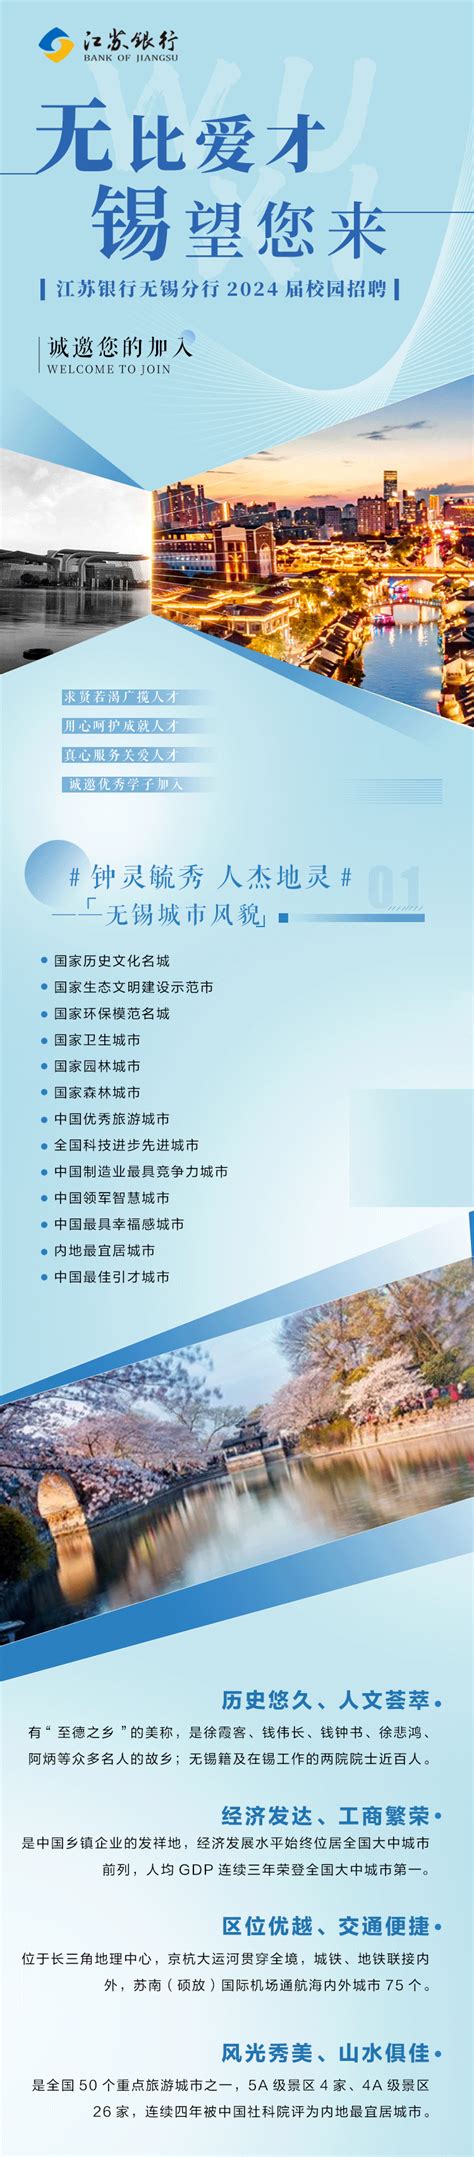 江苏银行无锡分行与市科技局深化战略合作共助创新创业 - 银行 - 中国网•东海资讯